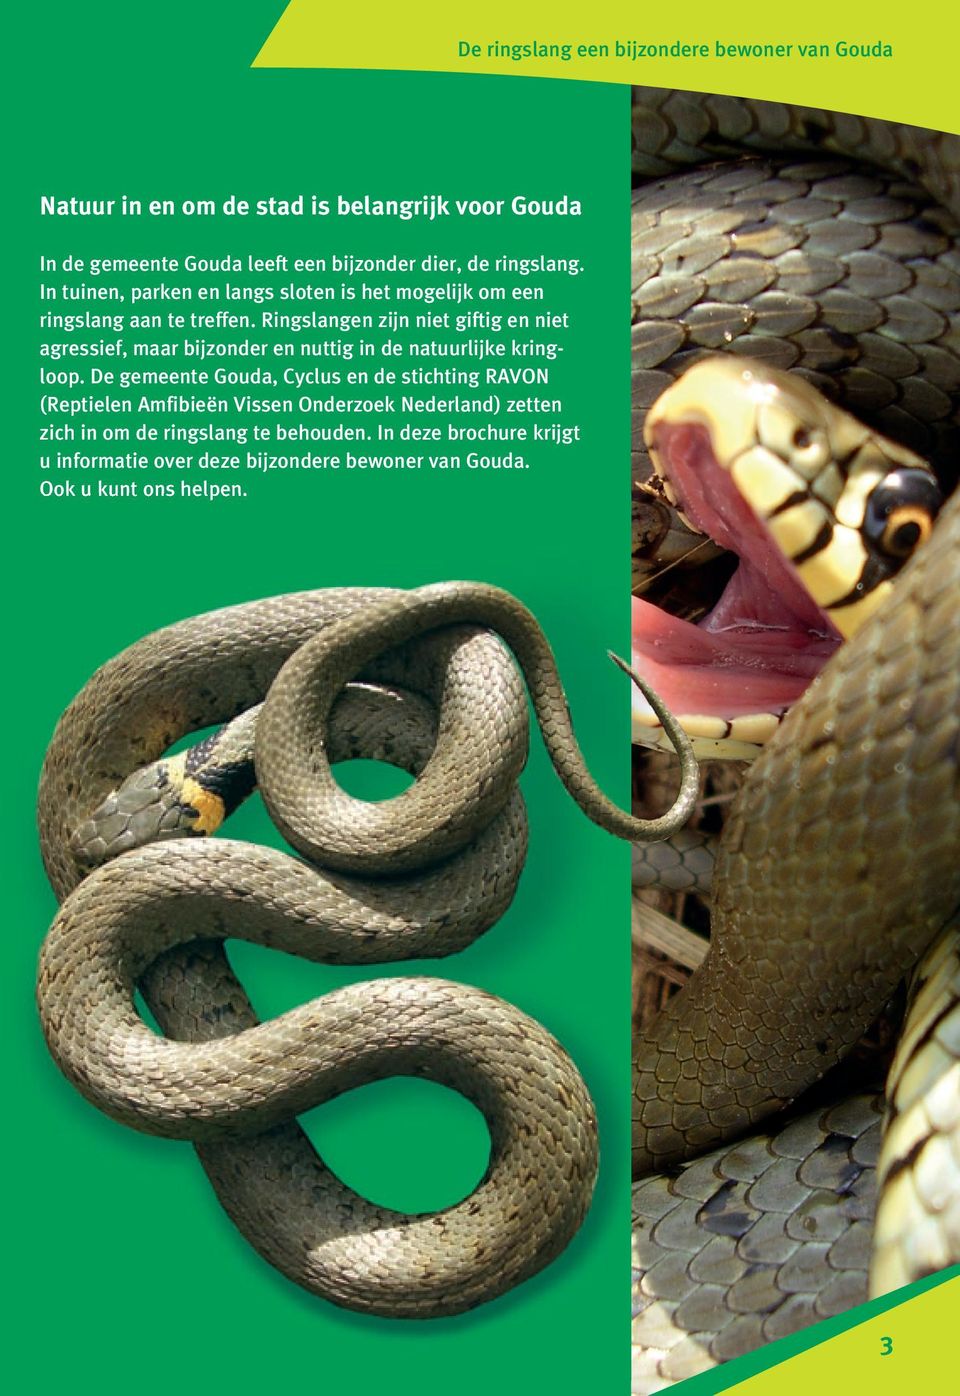 Ringslangen zijn niet giftig en niet agressief, maar bijzonder en nuttig in de natuurlijke kringloop.